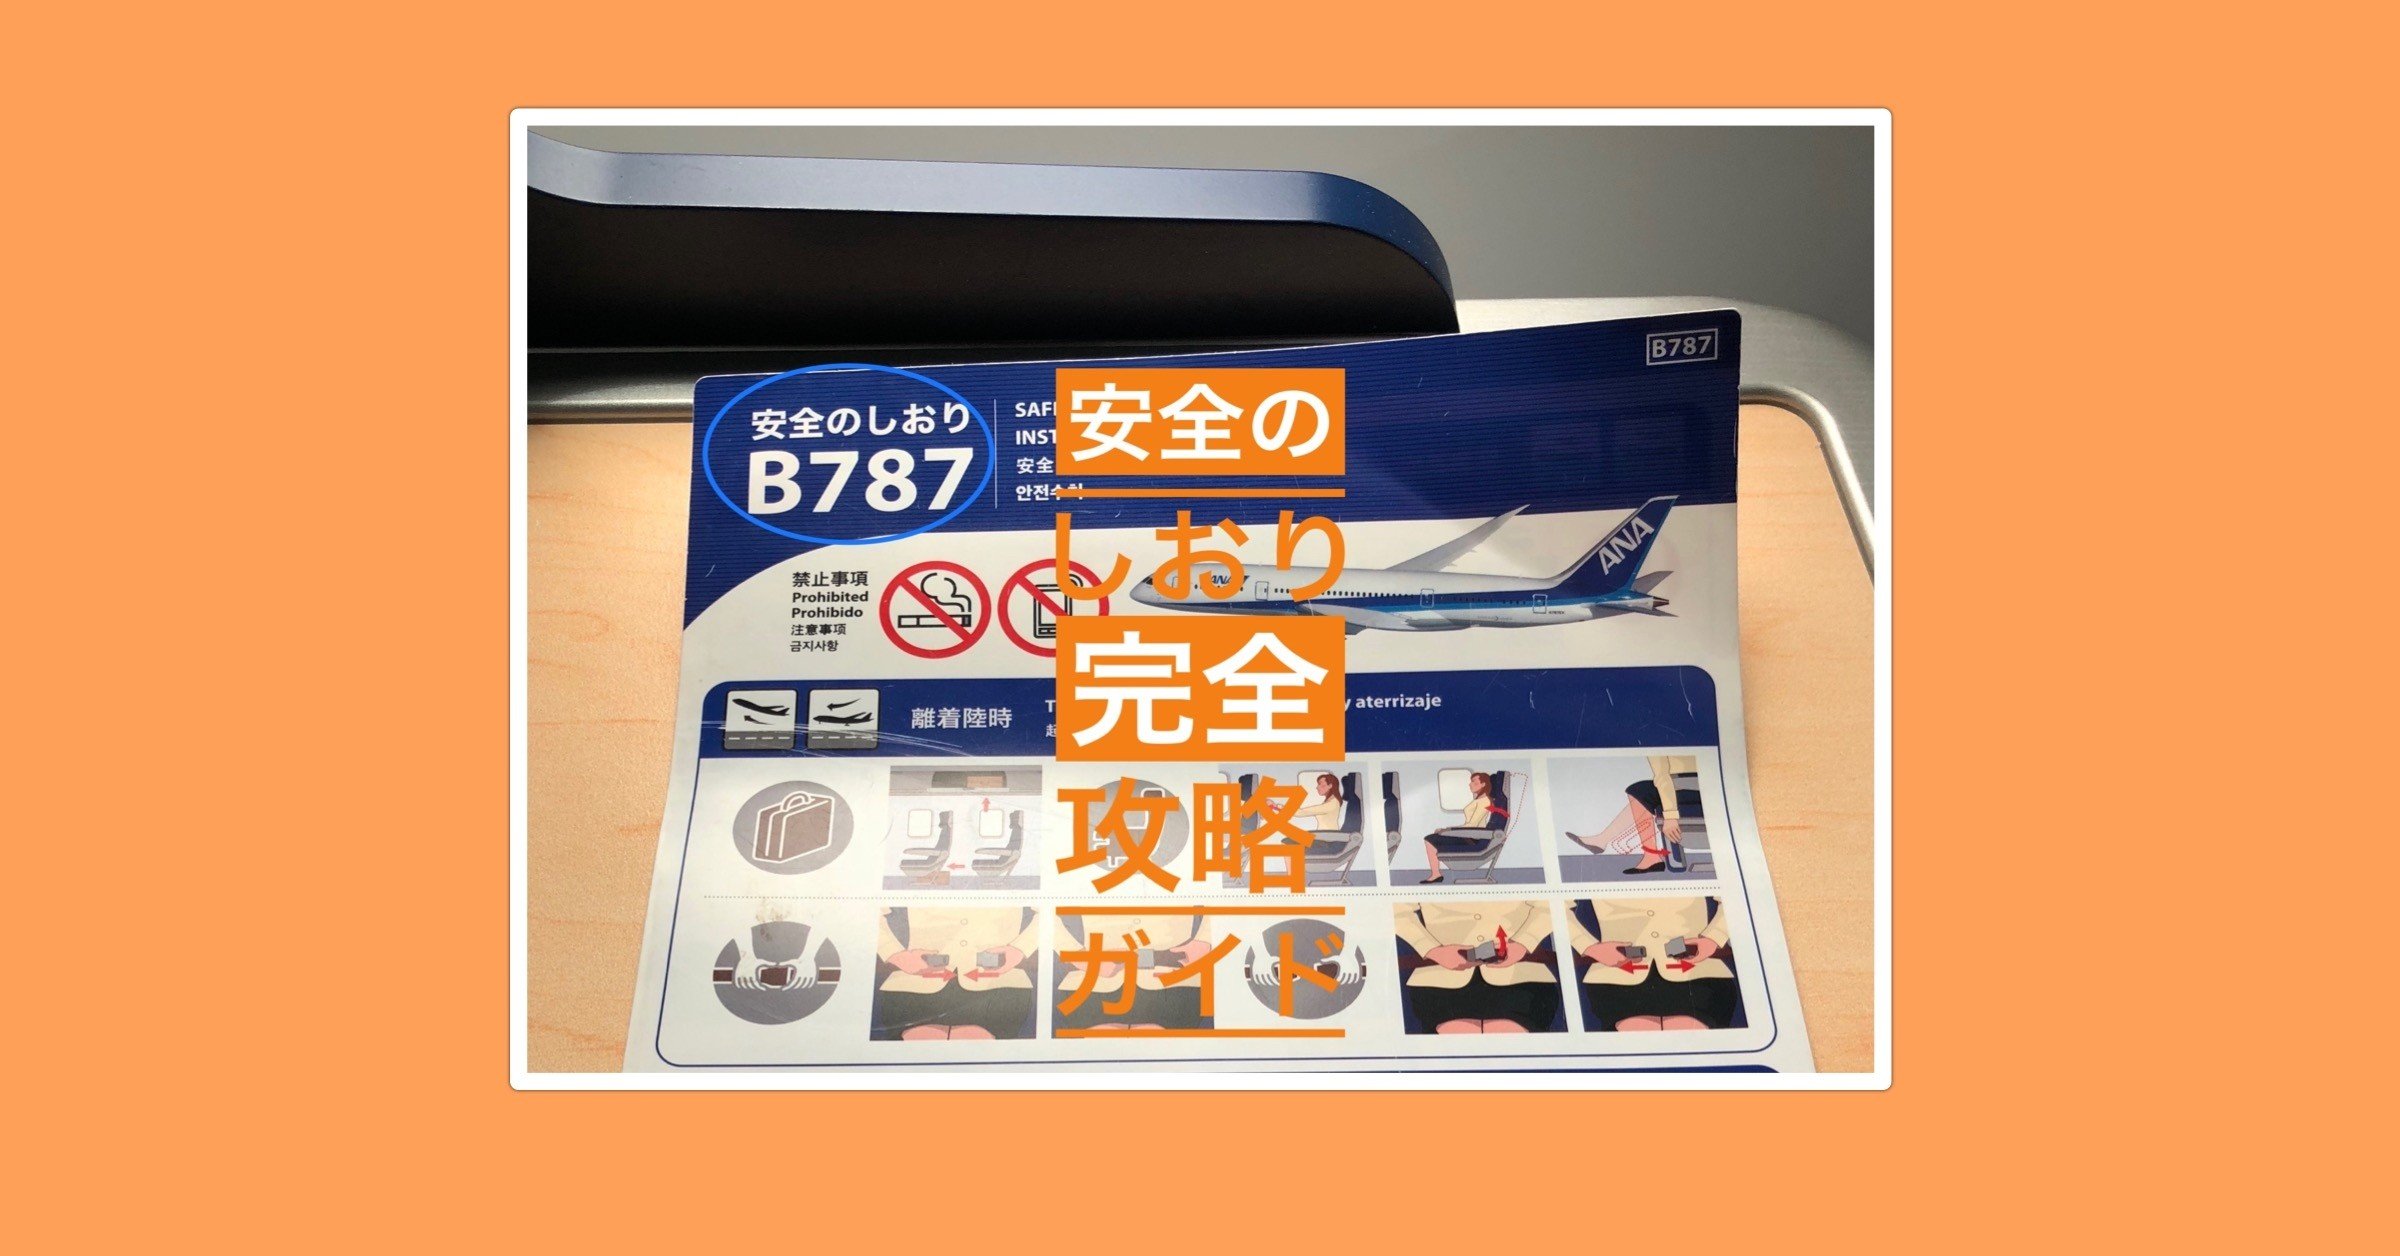 無料》 【安全のしおり完全攻略ガイド】 飛行機に乗ると各座席に置いてある「安全のしおり」の絵の意味を全部説明します。｜suzukyuin｜note